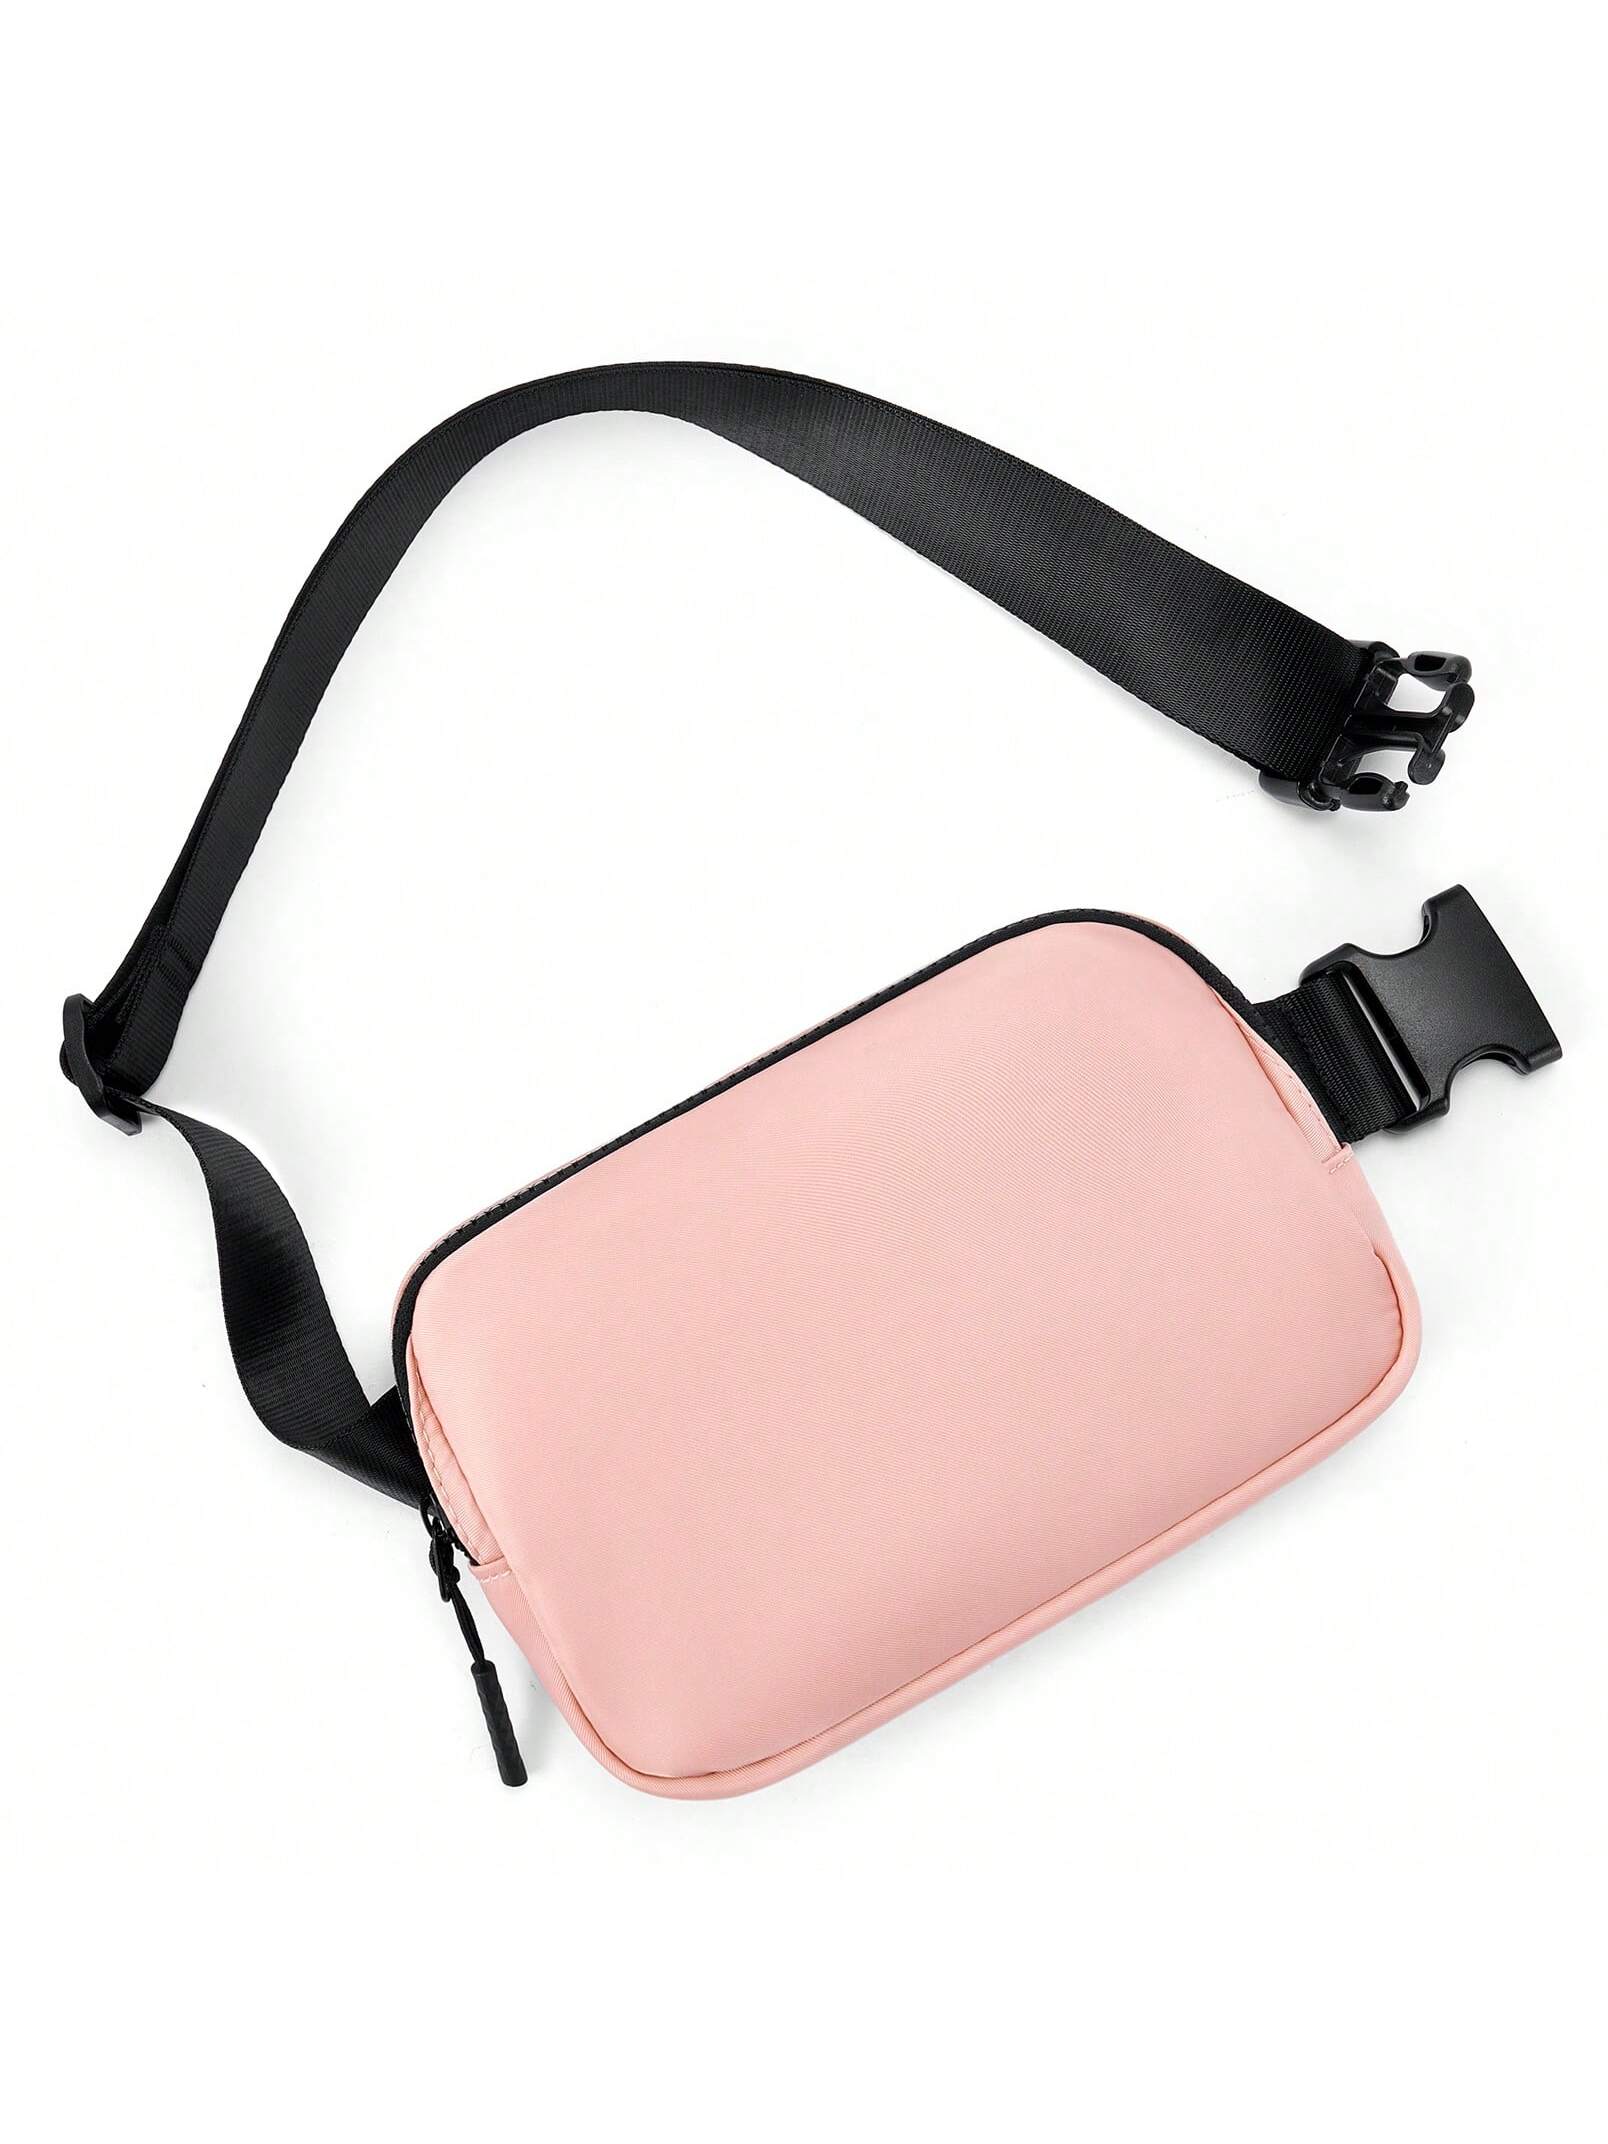 Поясная сумка Telena для женщин и мужчин, арбуз розовый сумка поясная цензура иск кожа черная